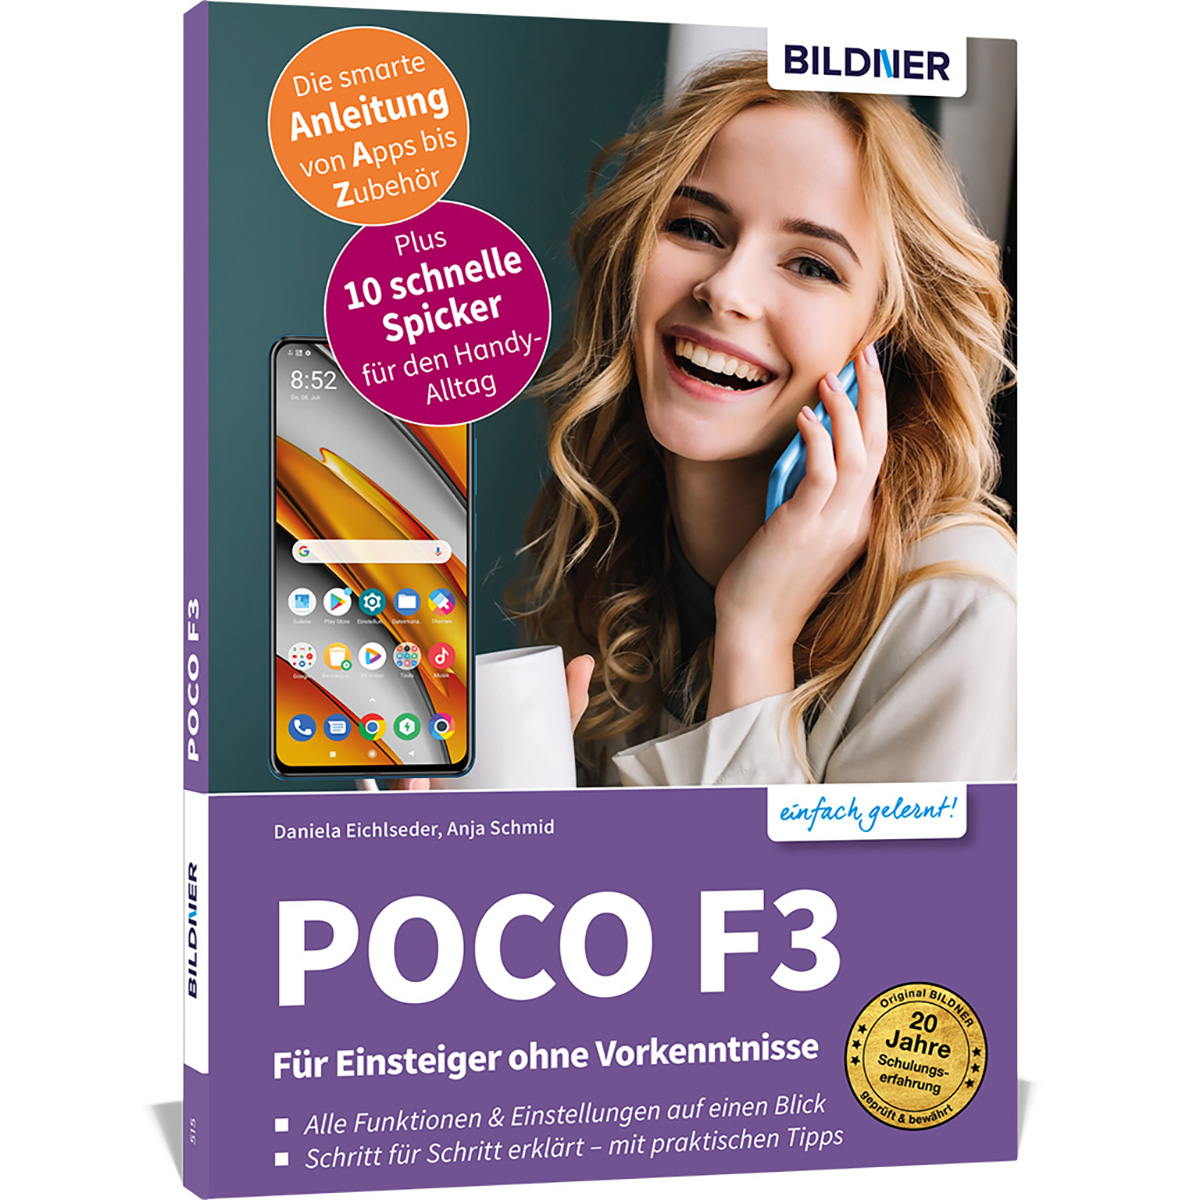 POCO F3 - Für Einsteiger ohne Vorkenntnisse